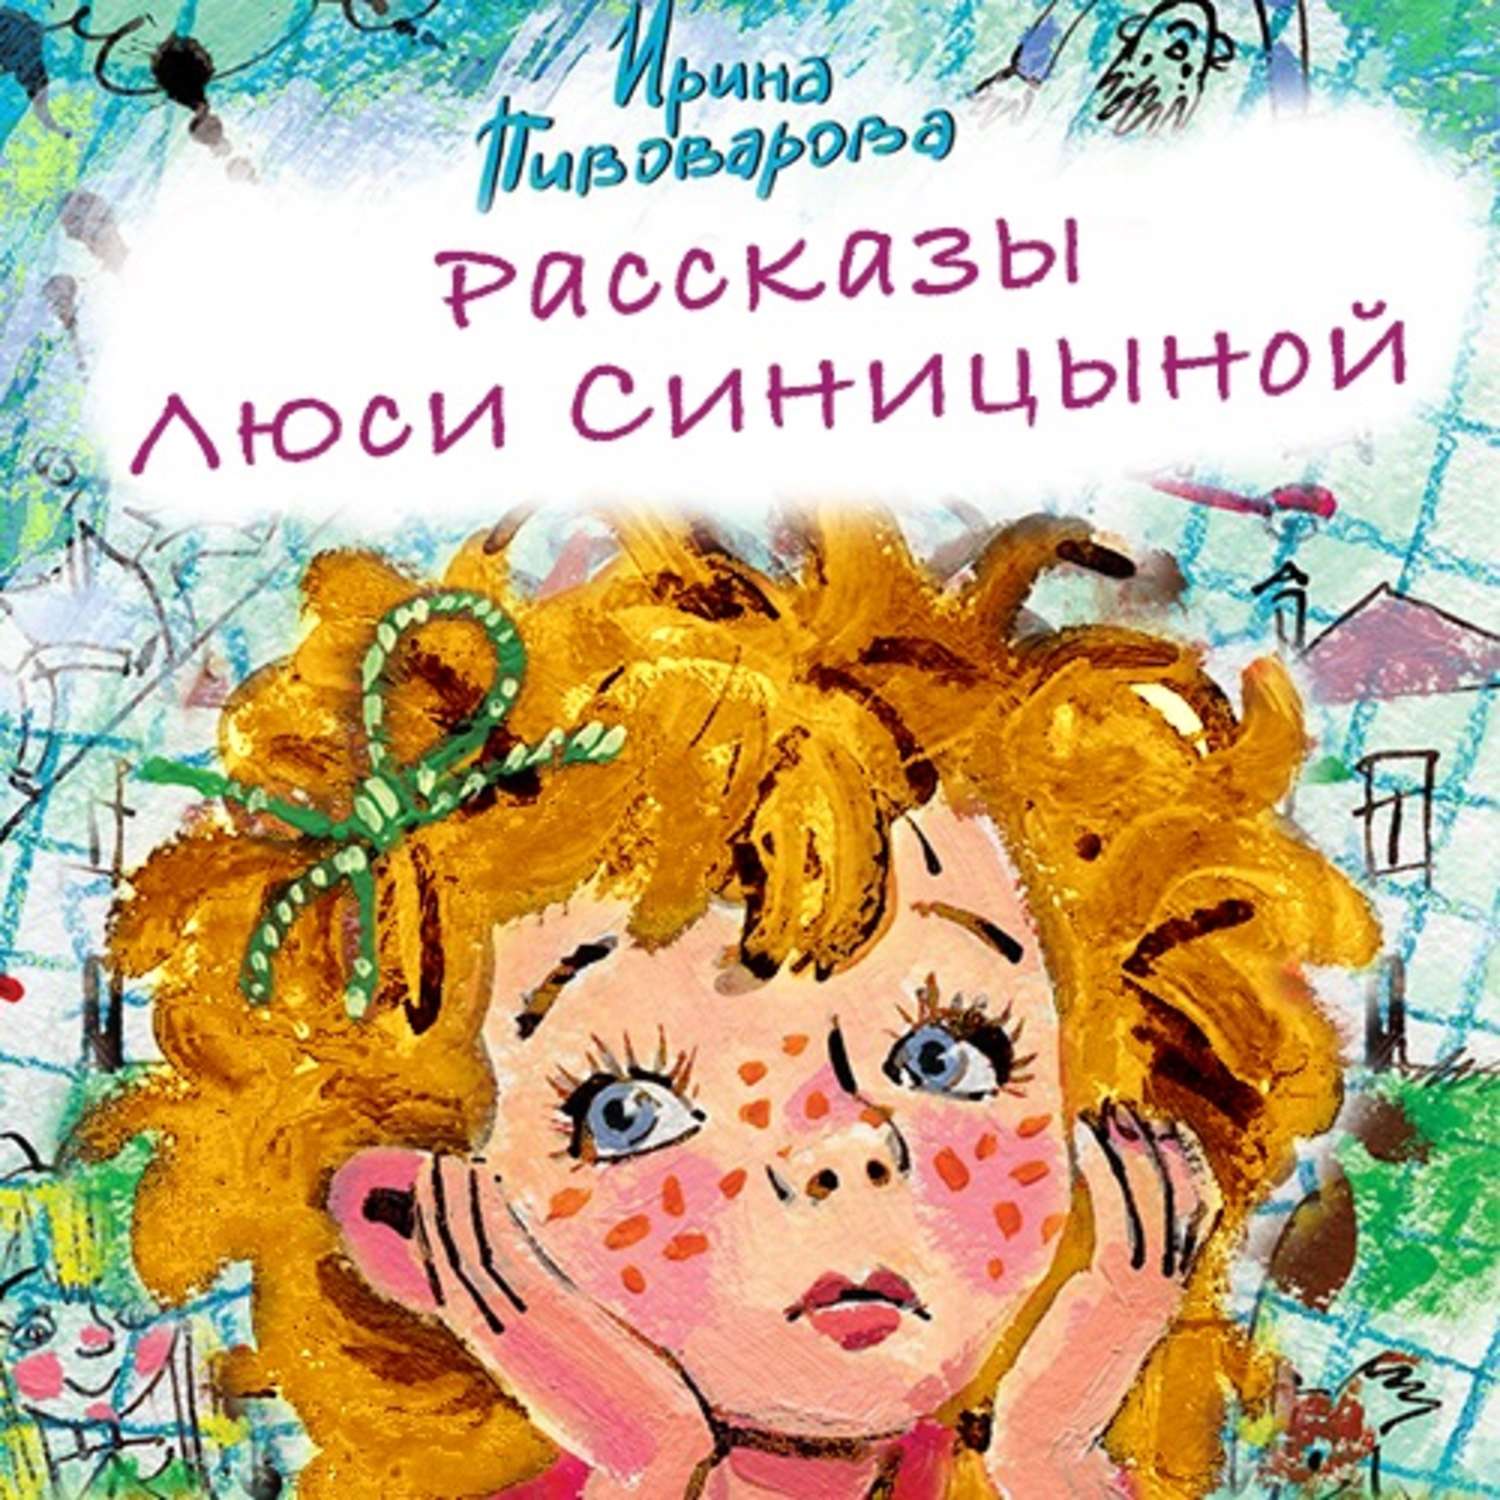 Https avidreaders ru books. Пивоварова рассказы Люси Синицыной.